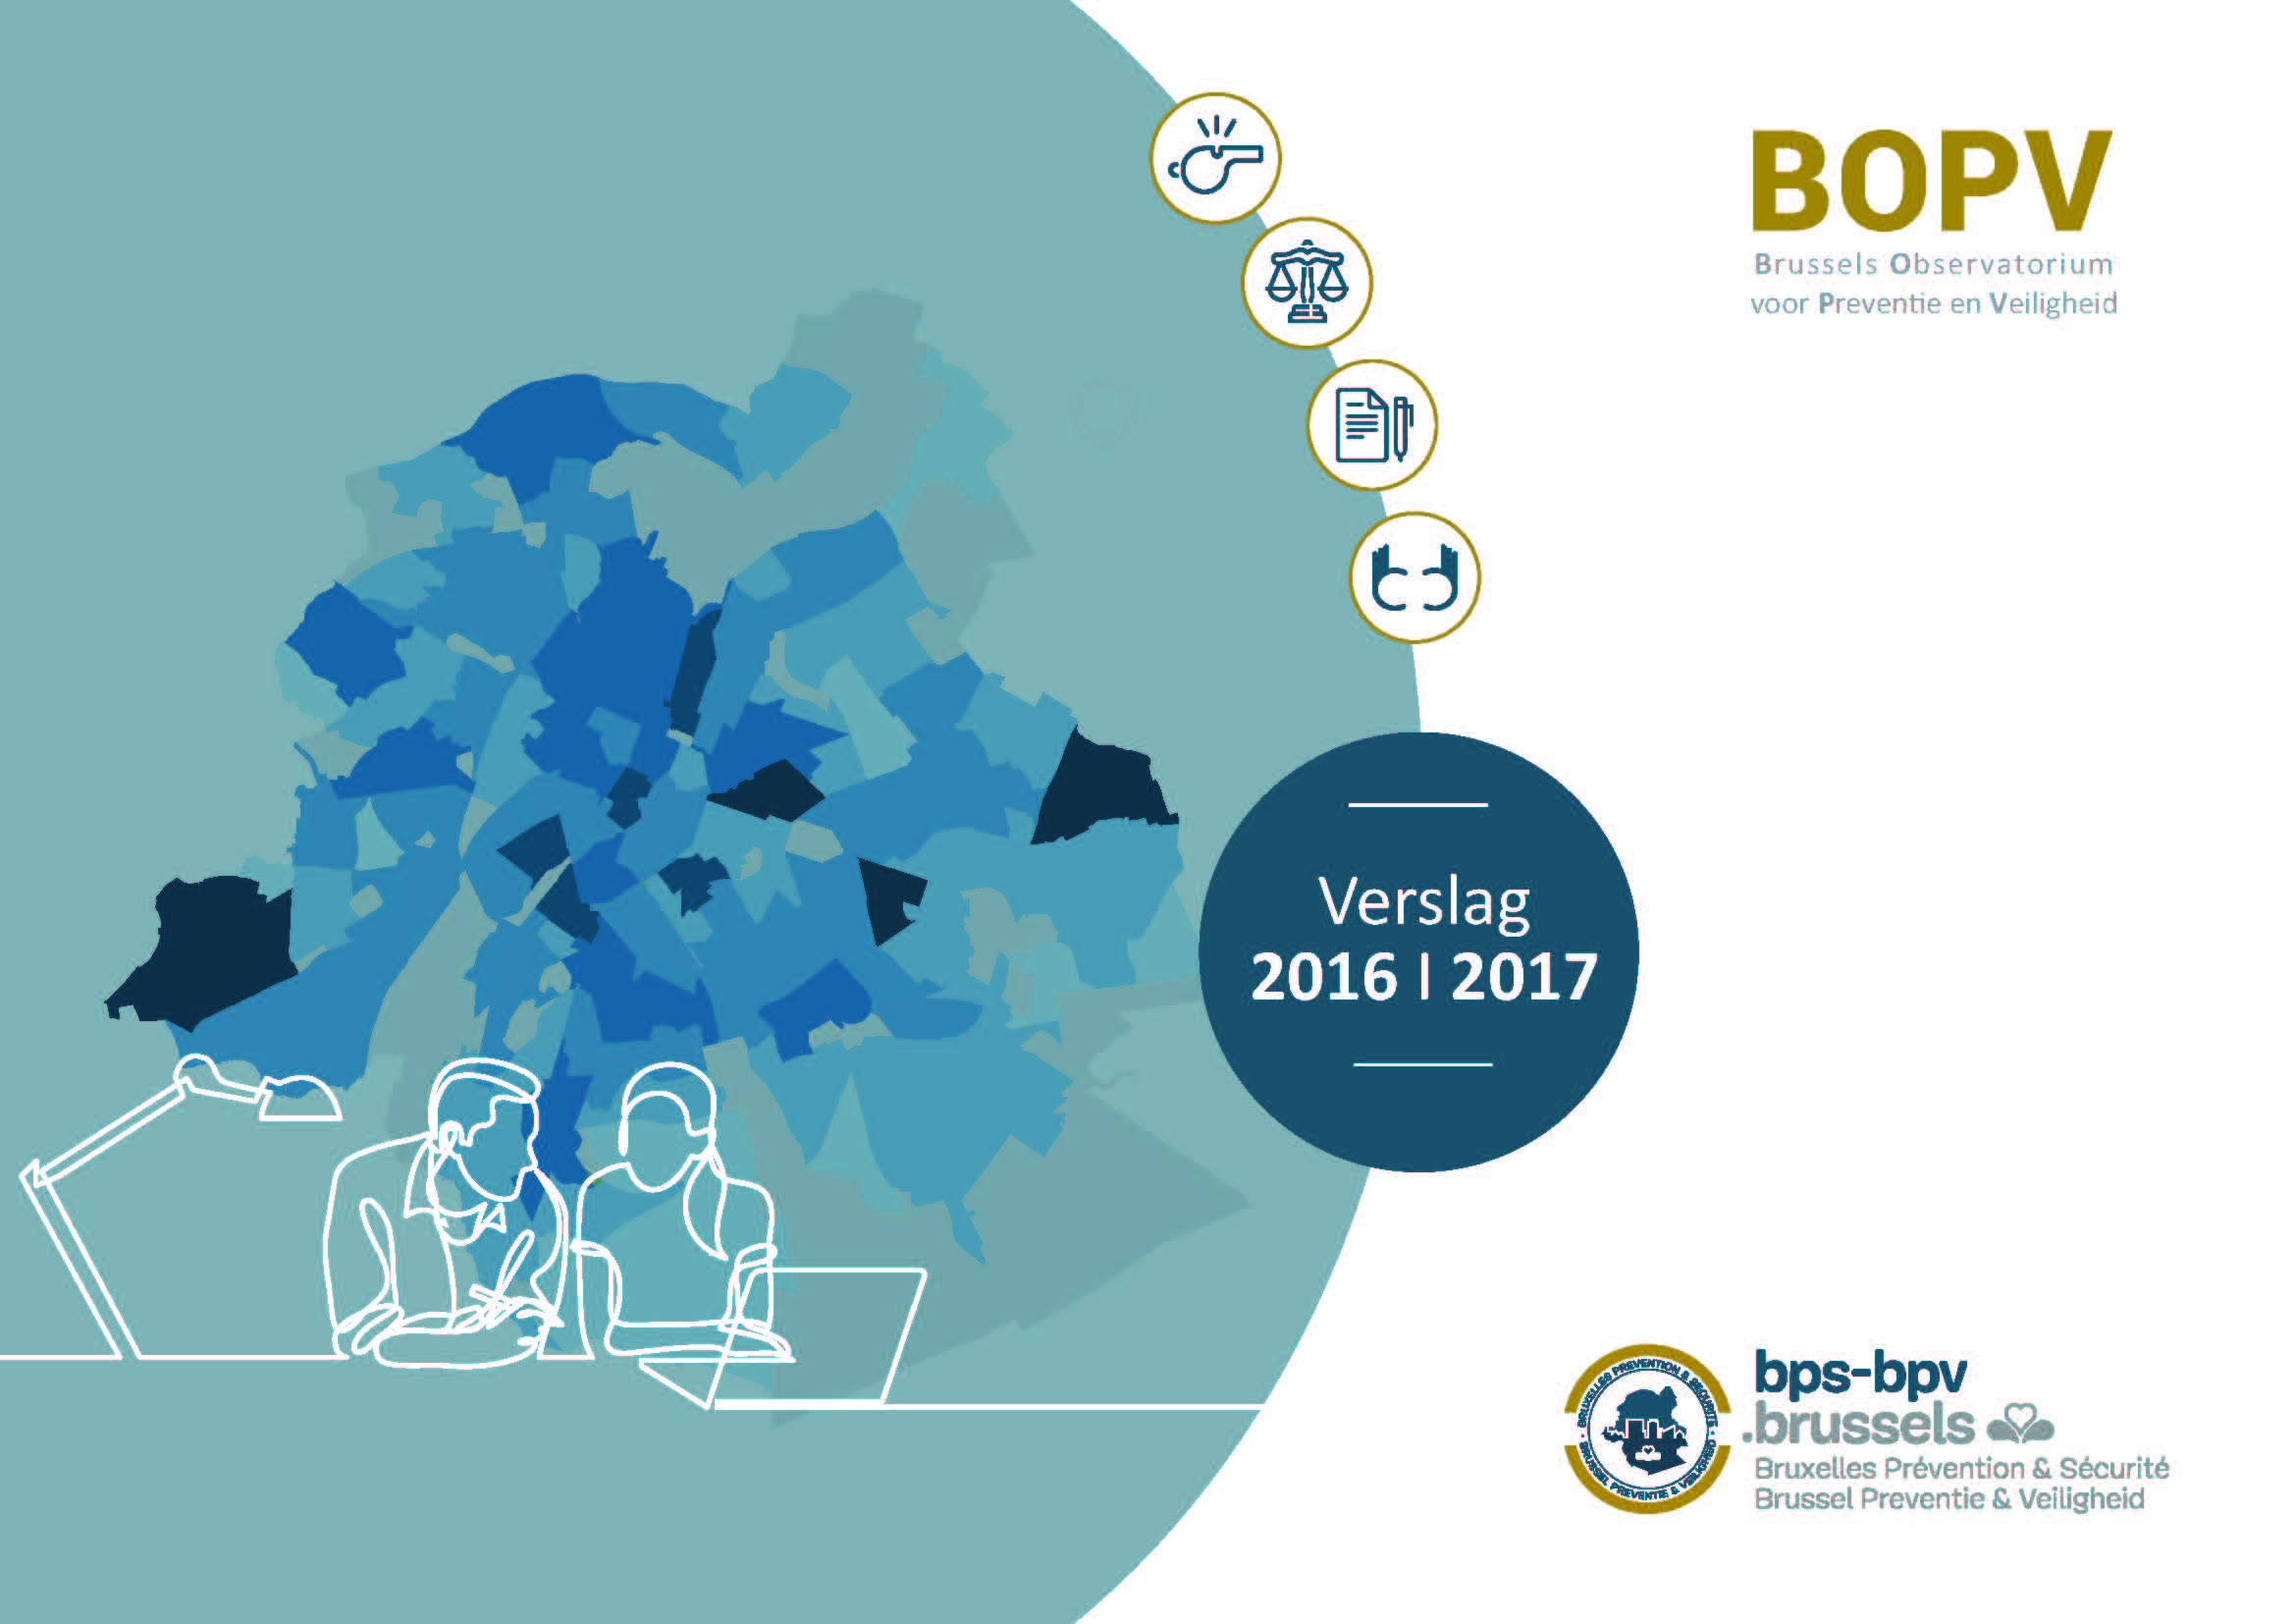 Verslag 2016-2017 BOPV